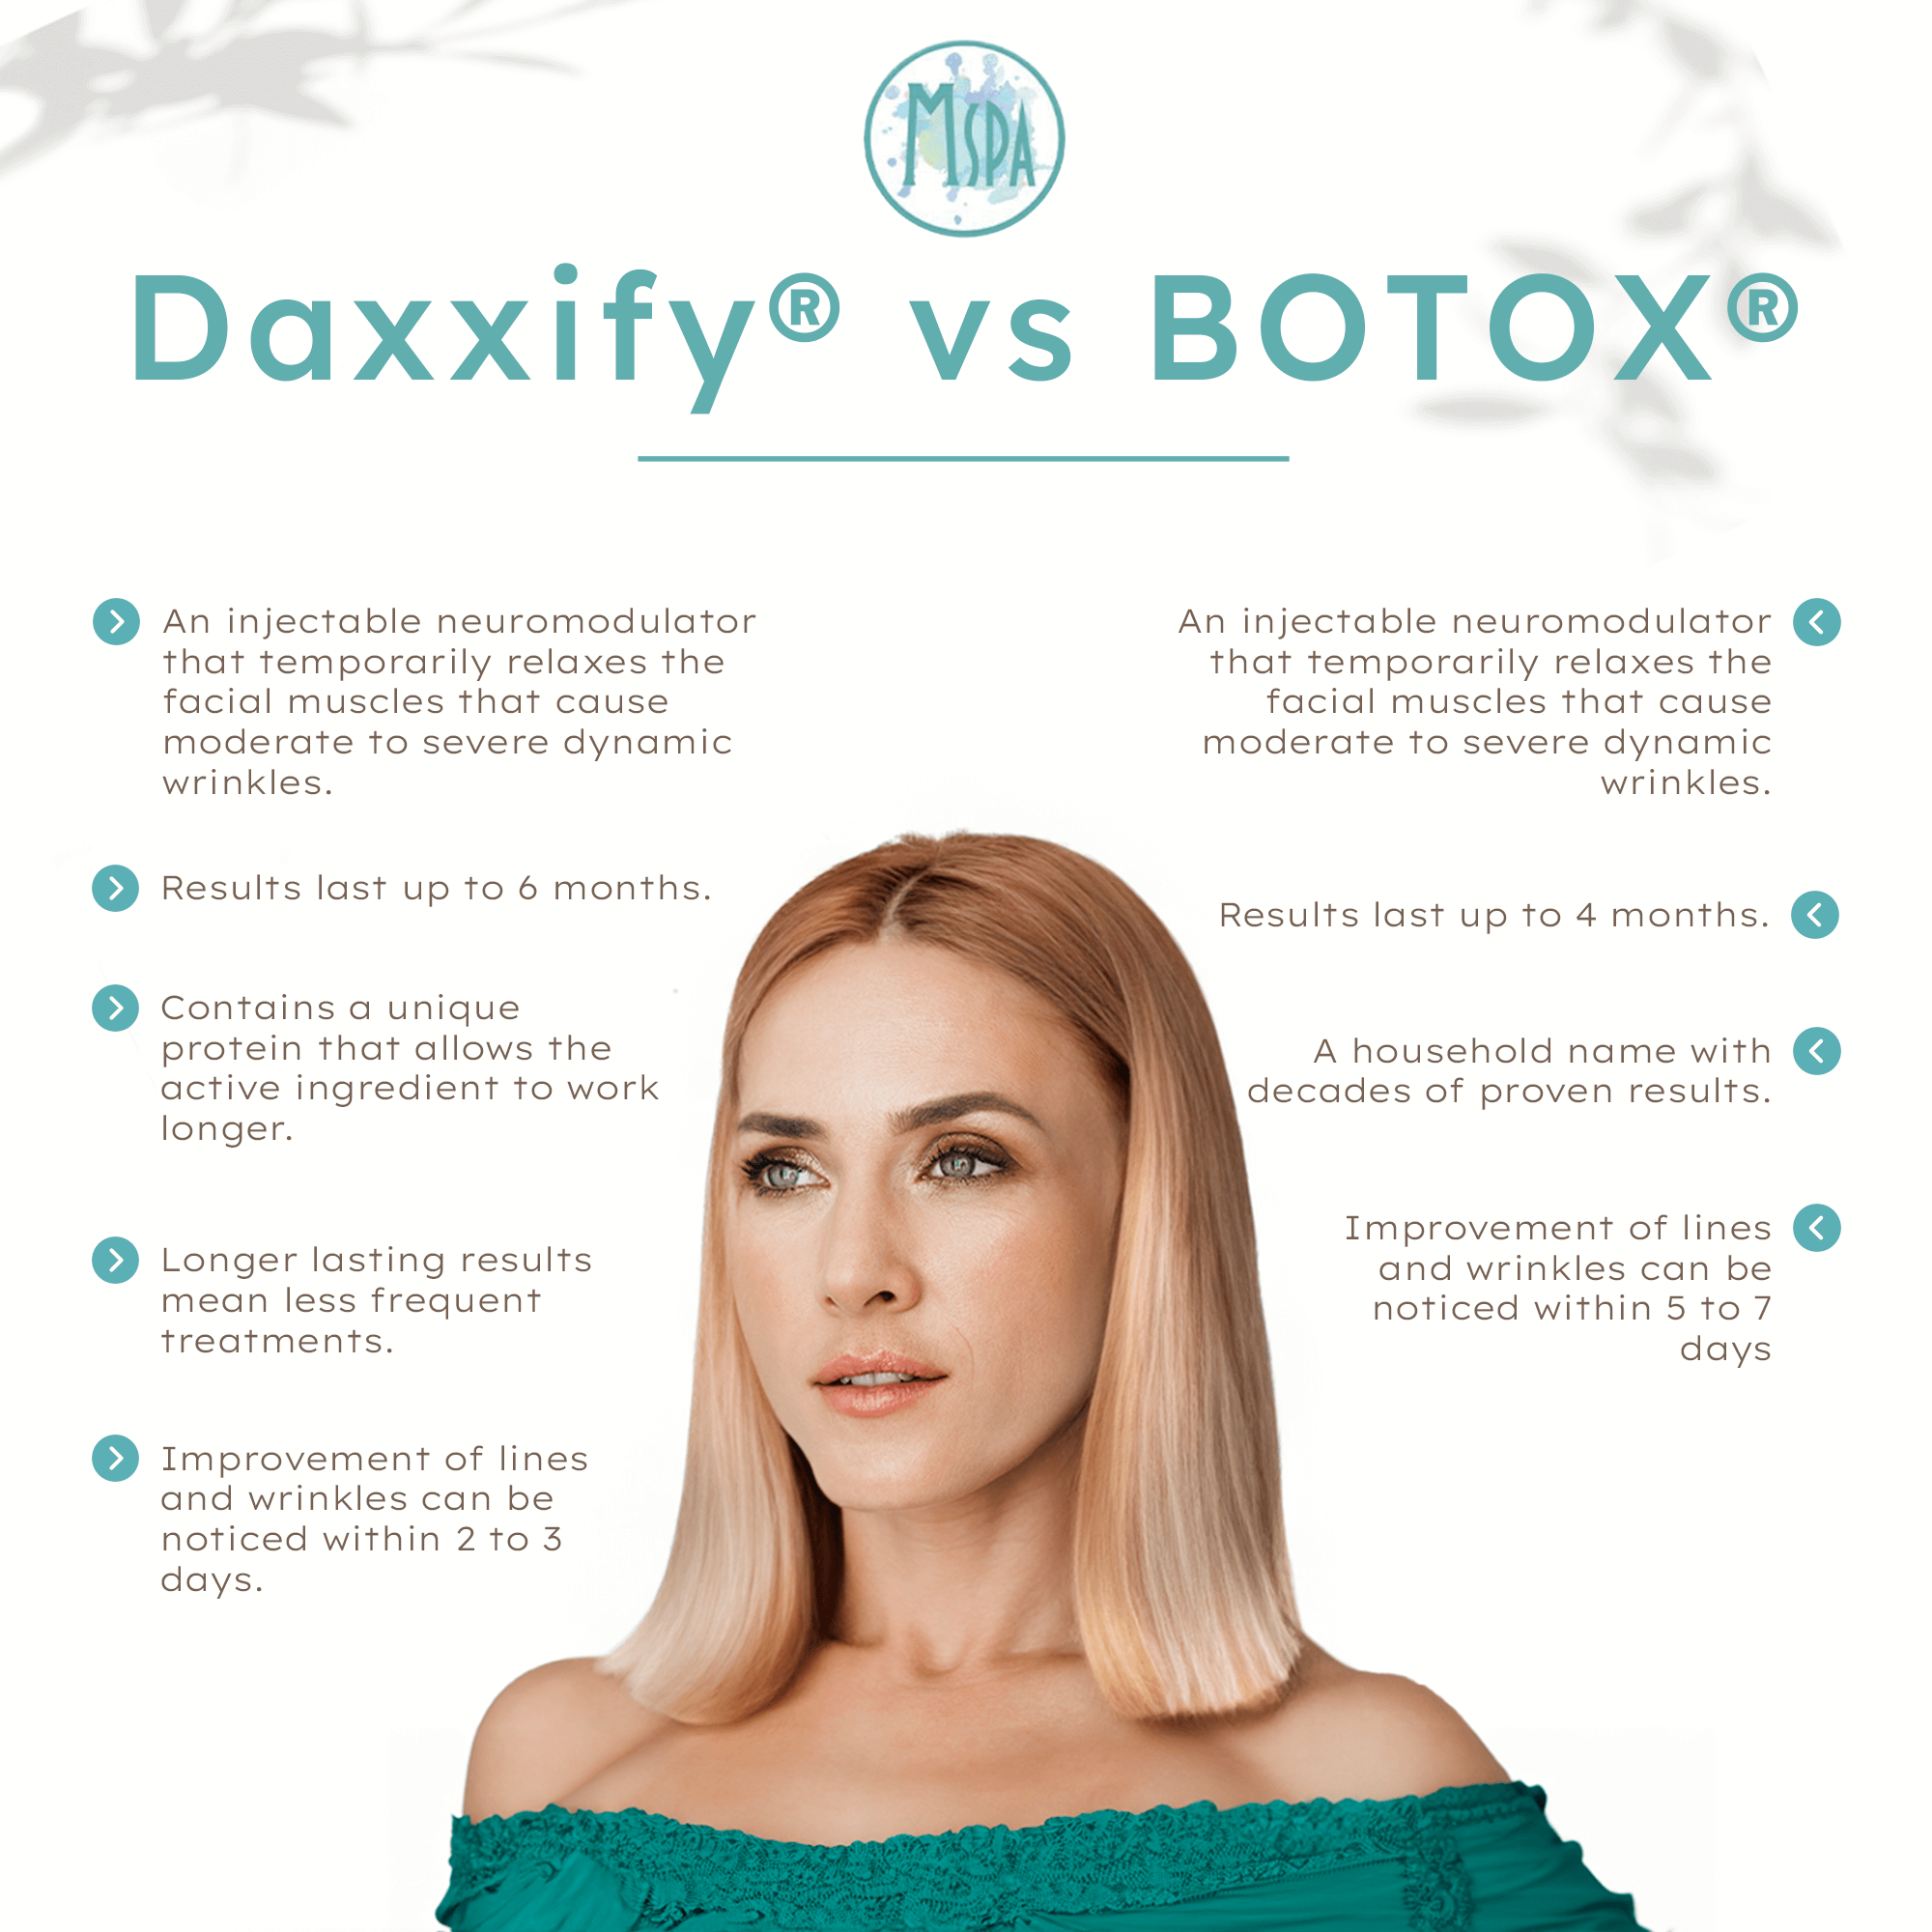 Daxxify® vs BOTOX®